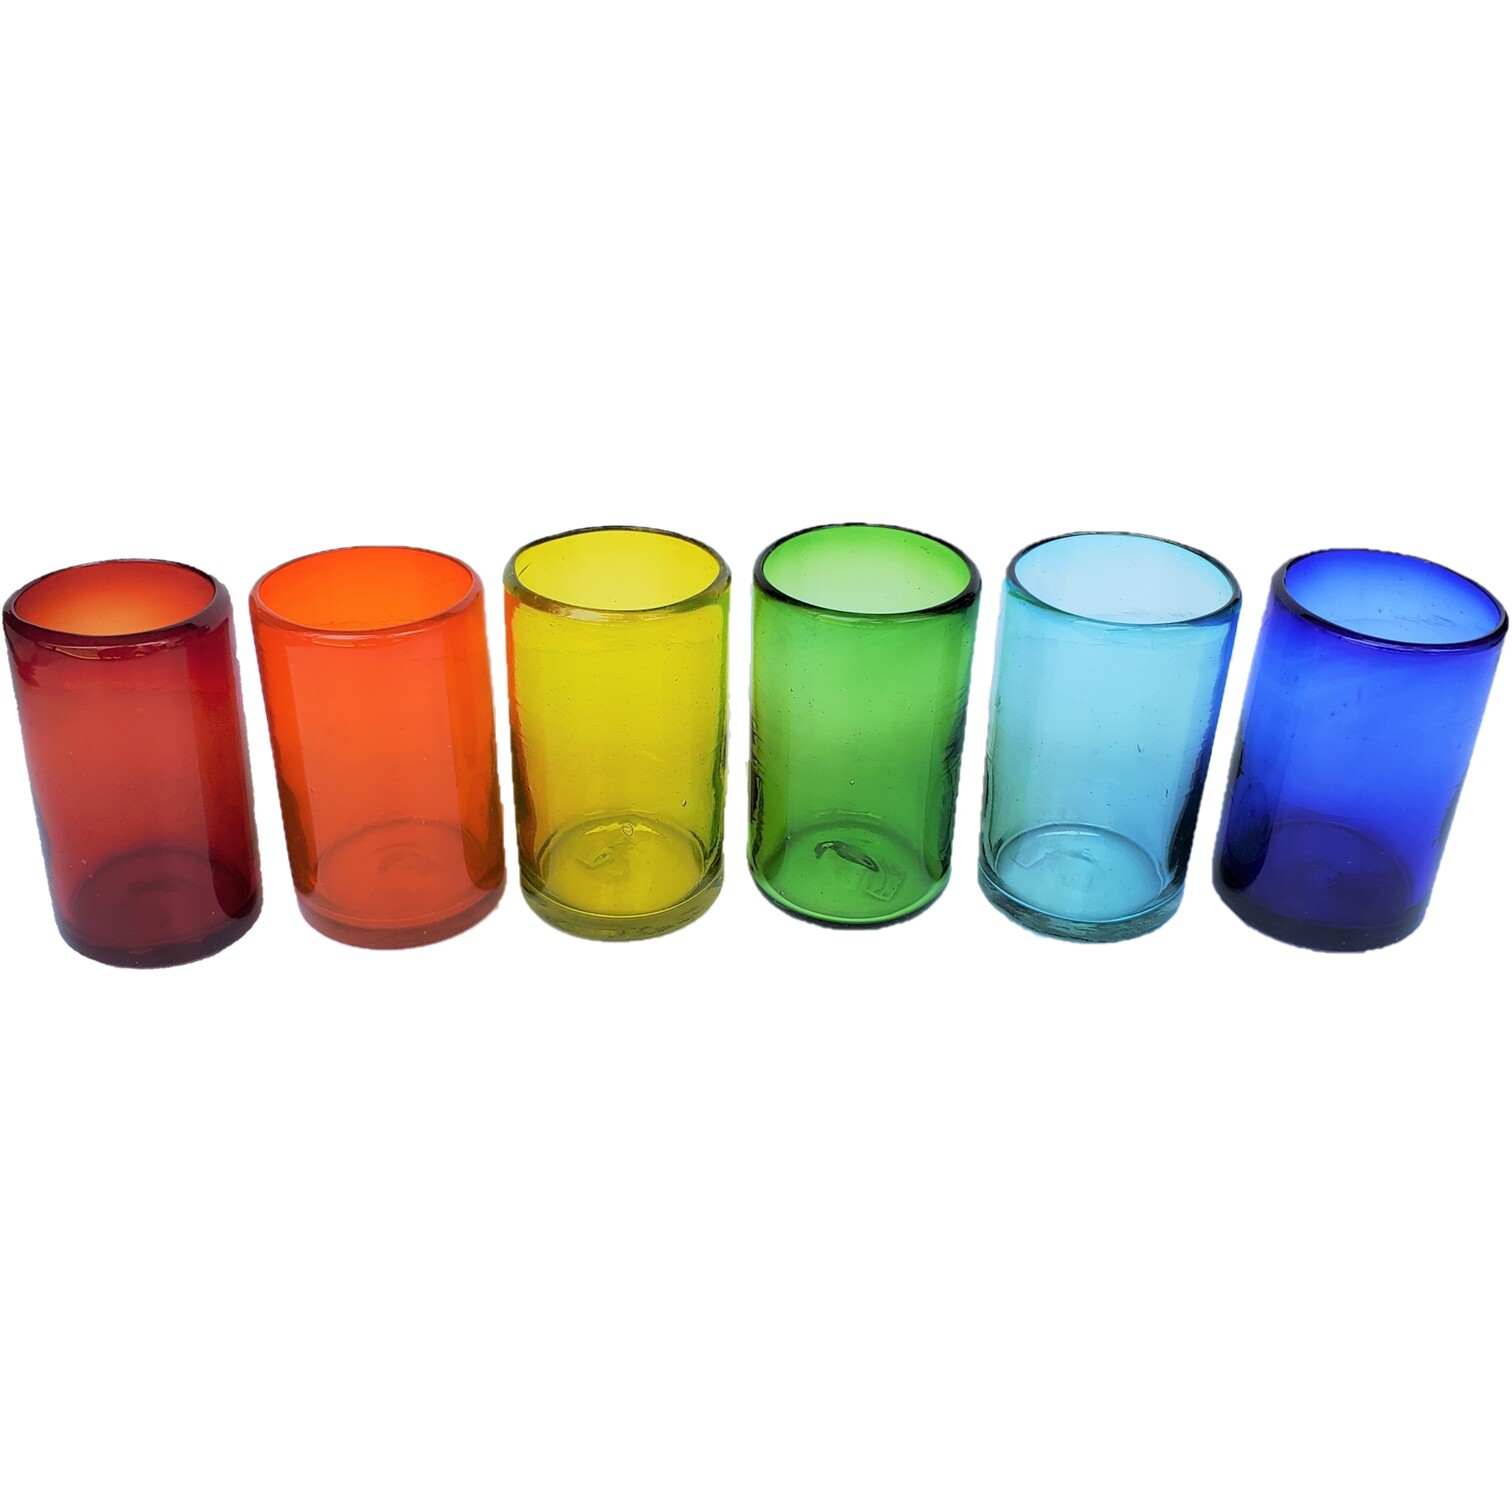 Vasos de Vidrio Soplado / Juego de 6 vasos grandes de colores Arcoíris / Éstos artesanales vasos le darán un toque clásico a su bebida favorita.